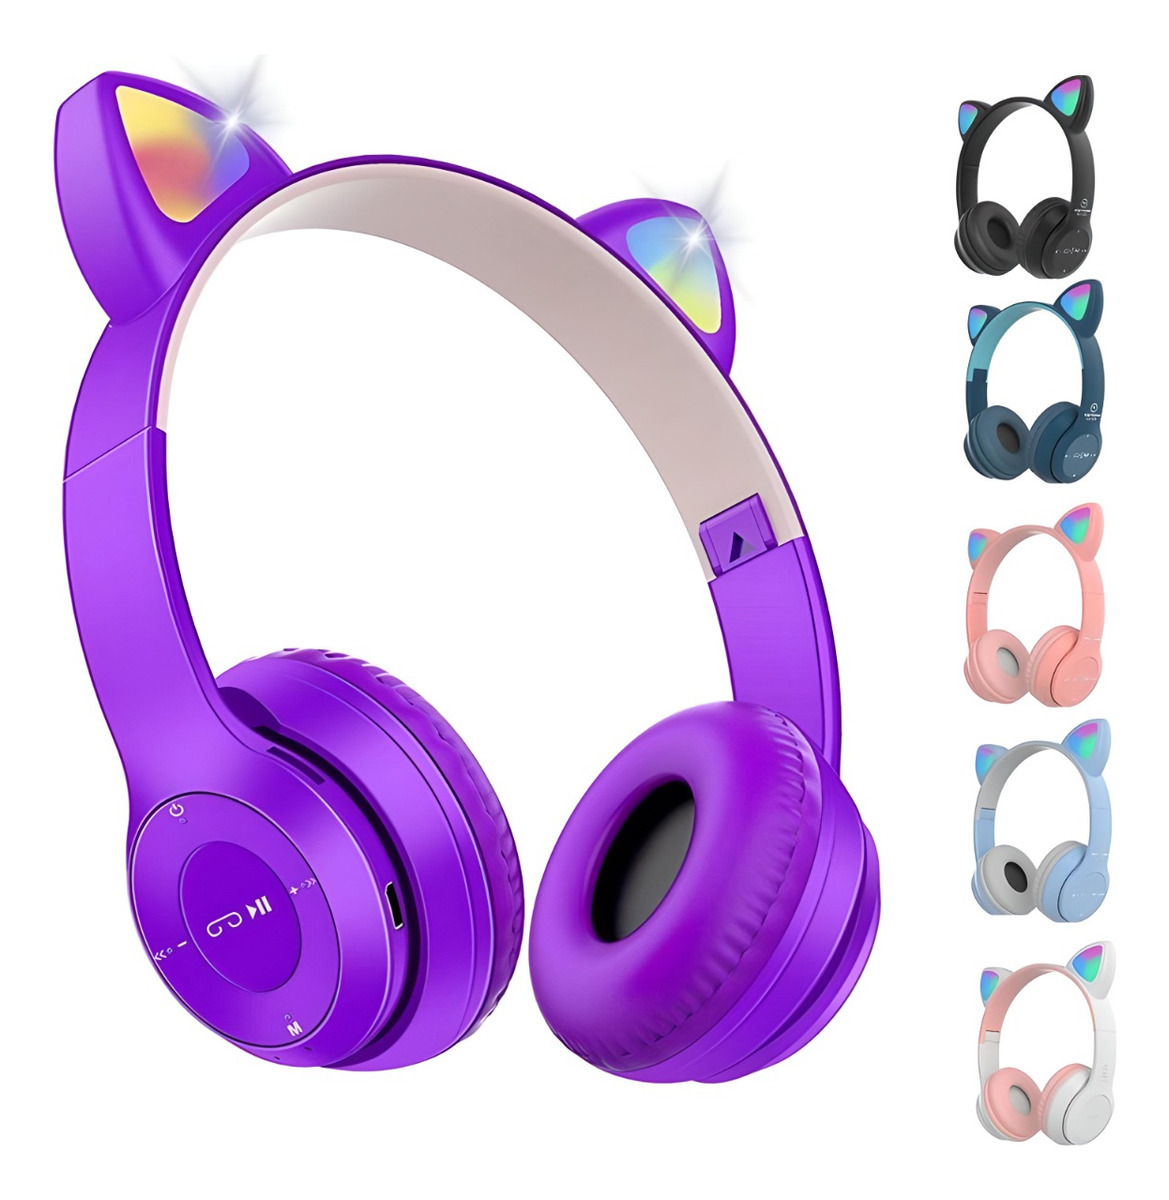 Fone Orelha de Gato Headphone Bluetooth Sem fio Led Tiara Azul Cód